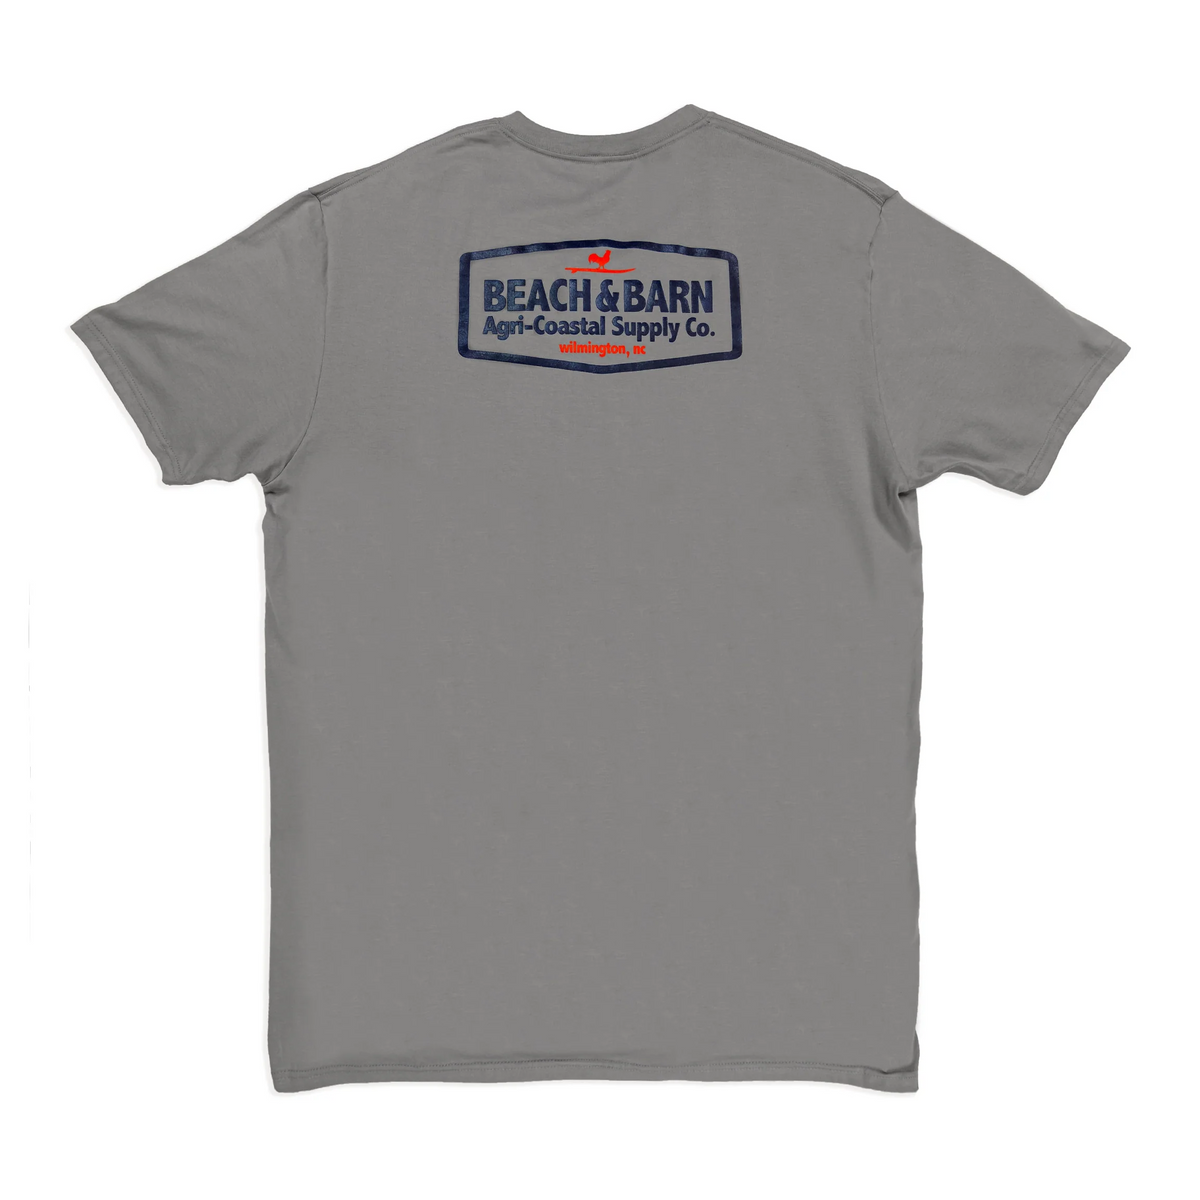 Sale - Agri-Coastal™ Tee Shirt